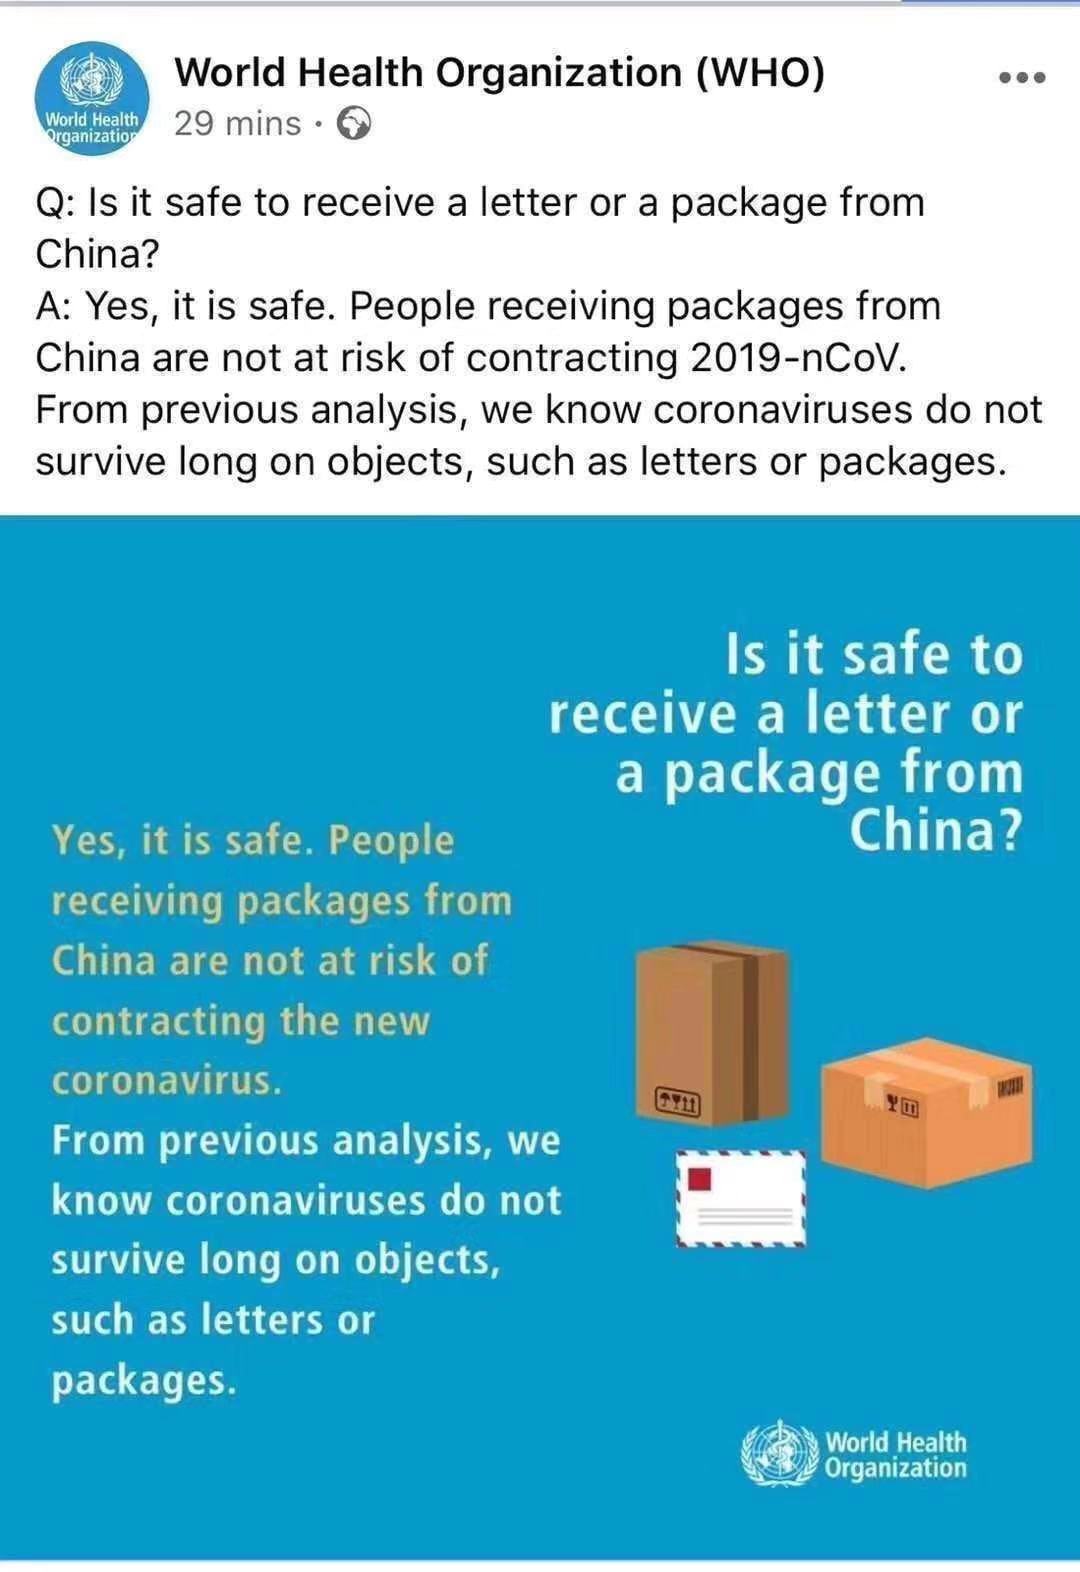 Apakah aman menerima surat atau paket dari Tiongkok?
        